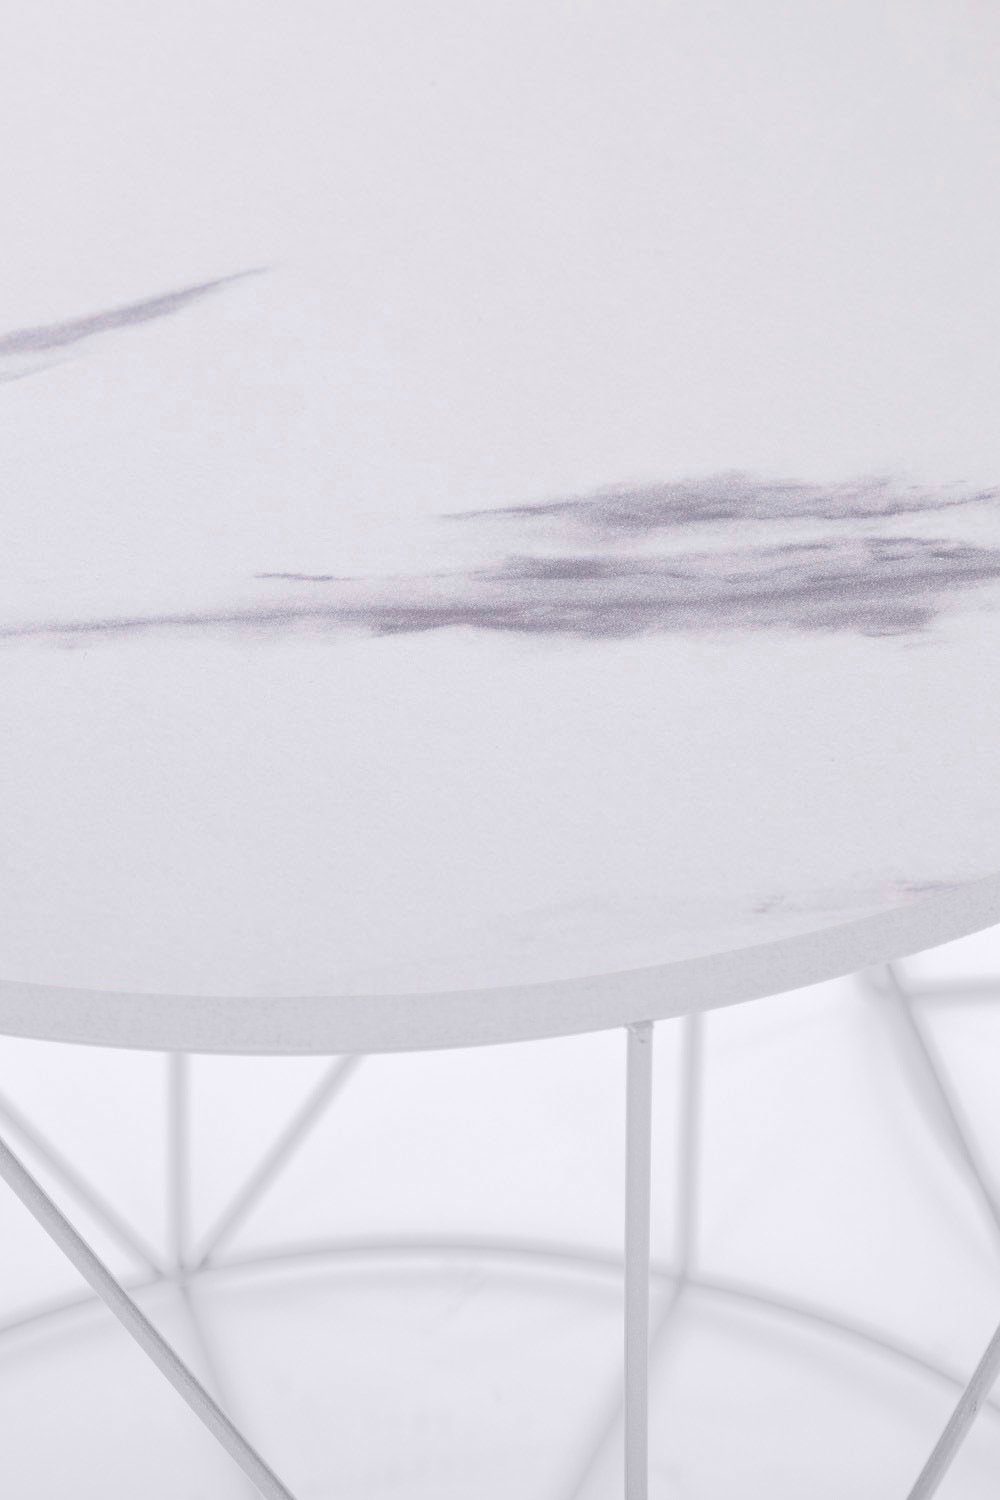 my Flair Beistelltisch Rundini, Weiß | Design Gestell, Naturbelassene Weiß | im lackiertem Platte Design Skandinavischem Weiß/Marmor